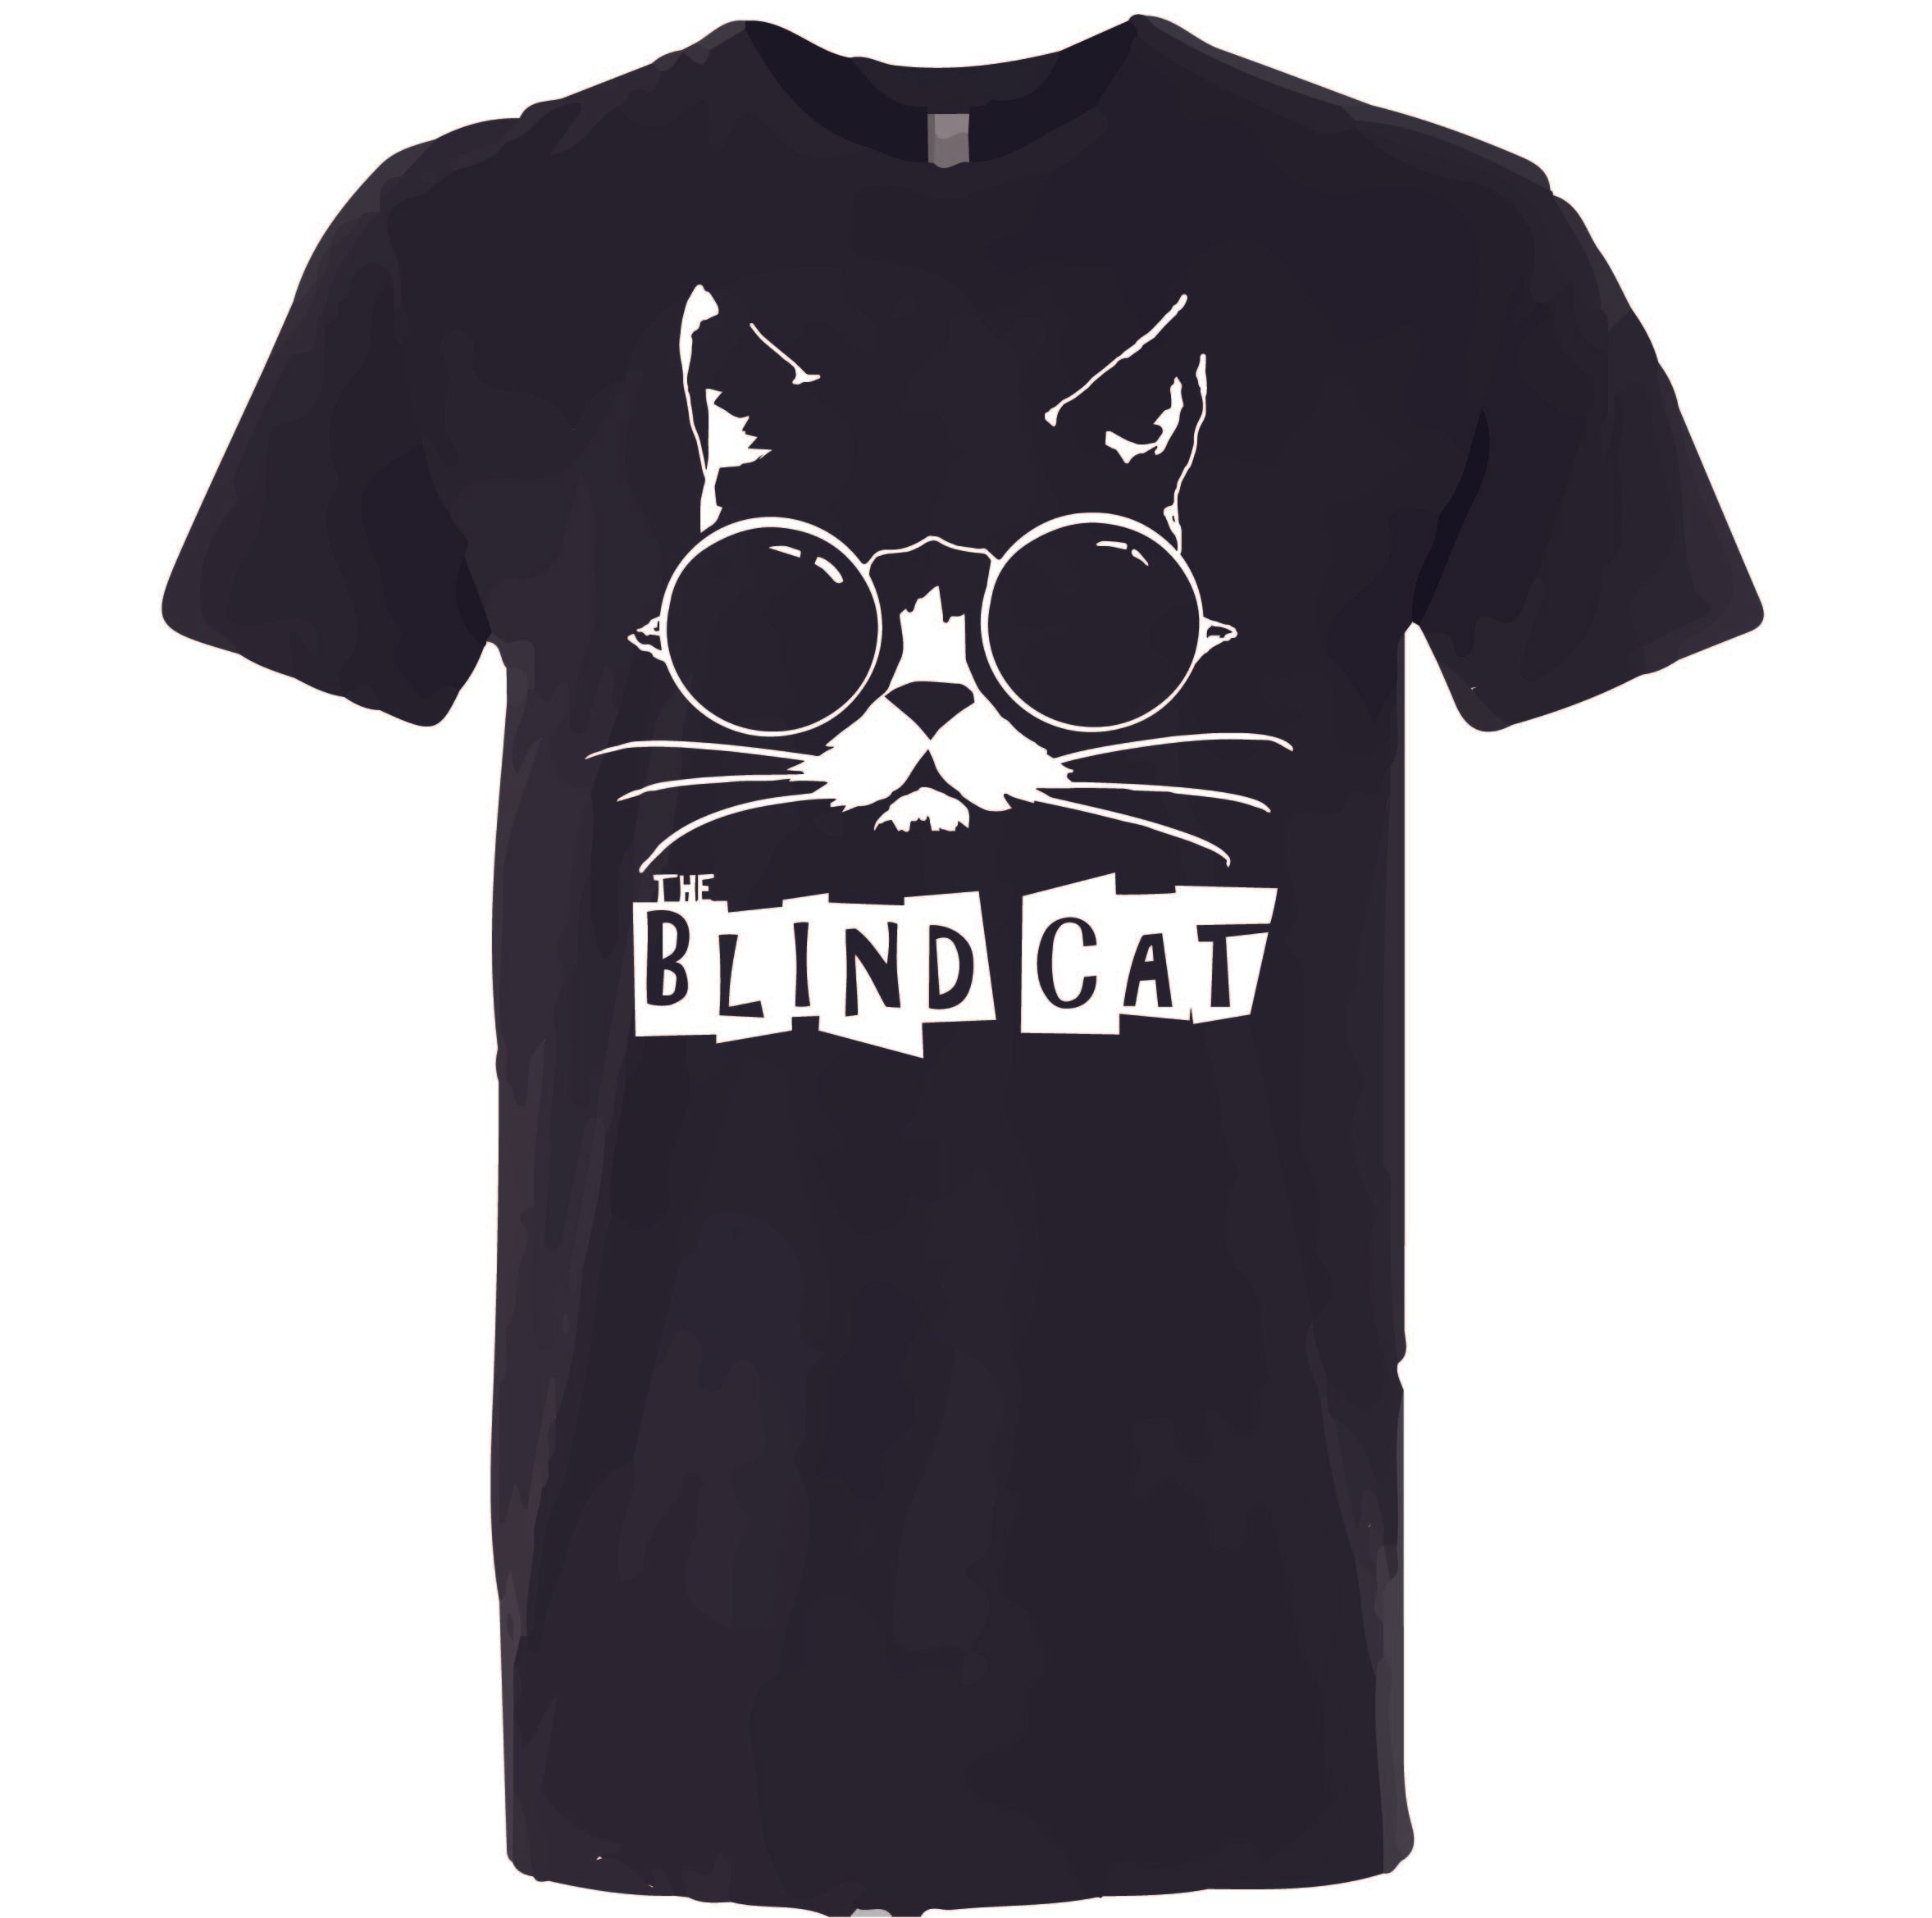 Blind Cat Unisex Tee